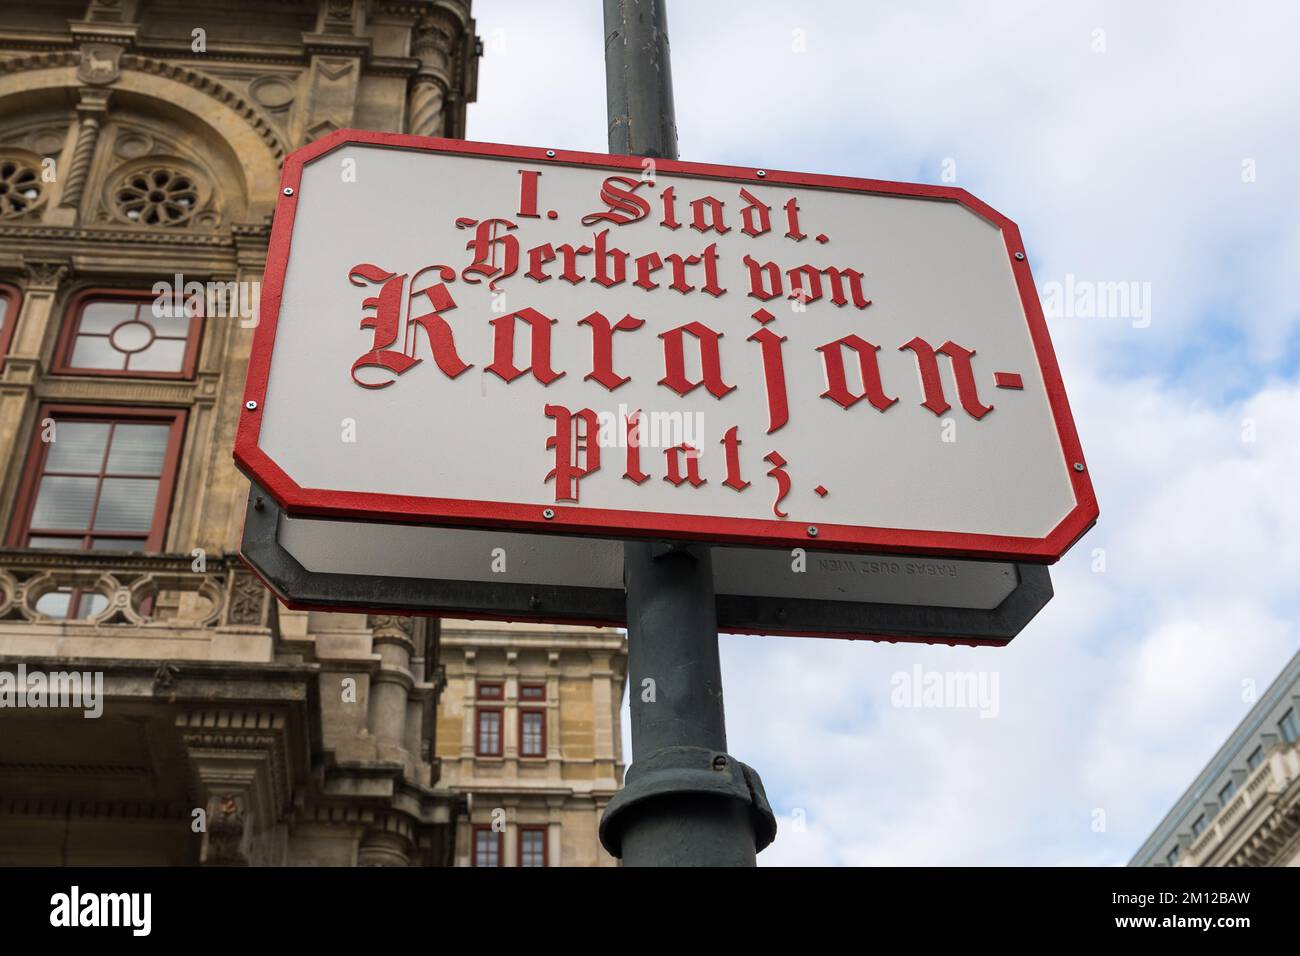 I. Stadt Herbert von Karajan Platz street name sign in Vienna, Austria Stock Photo